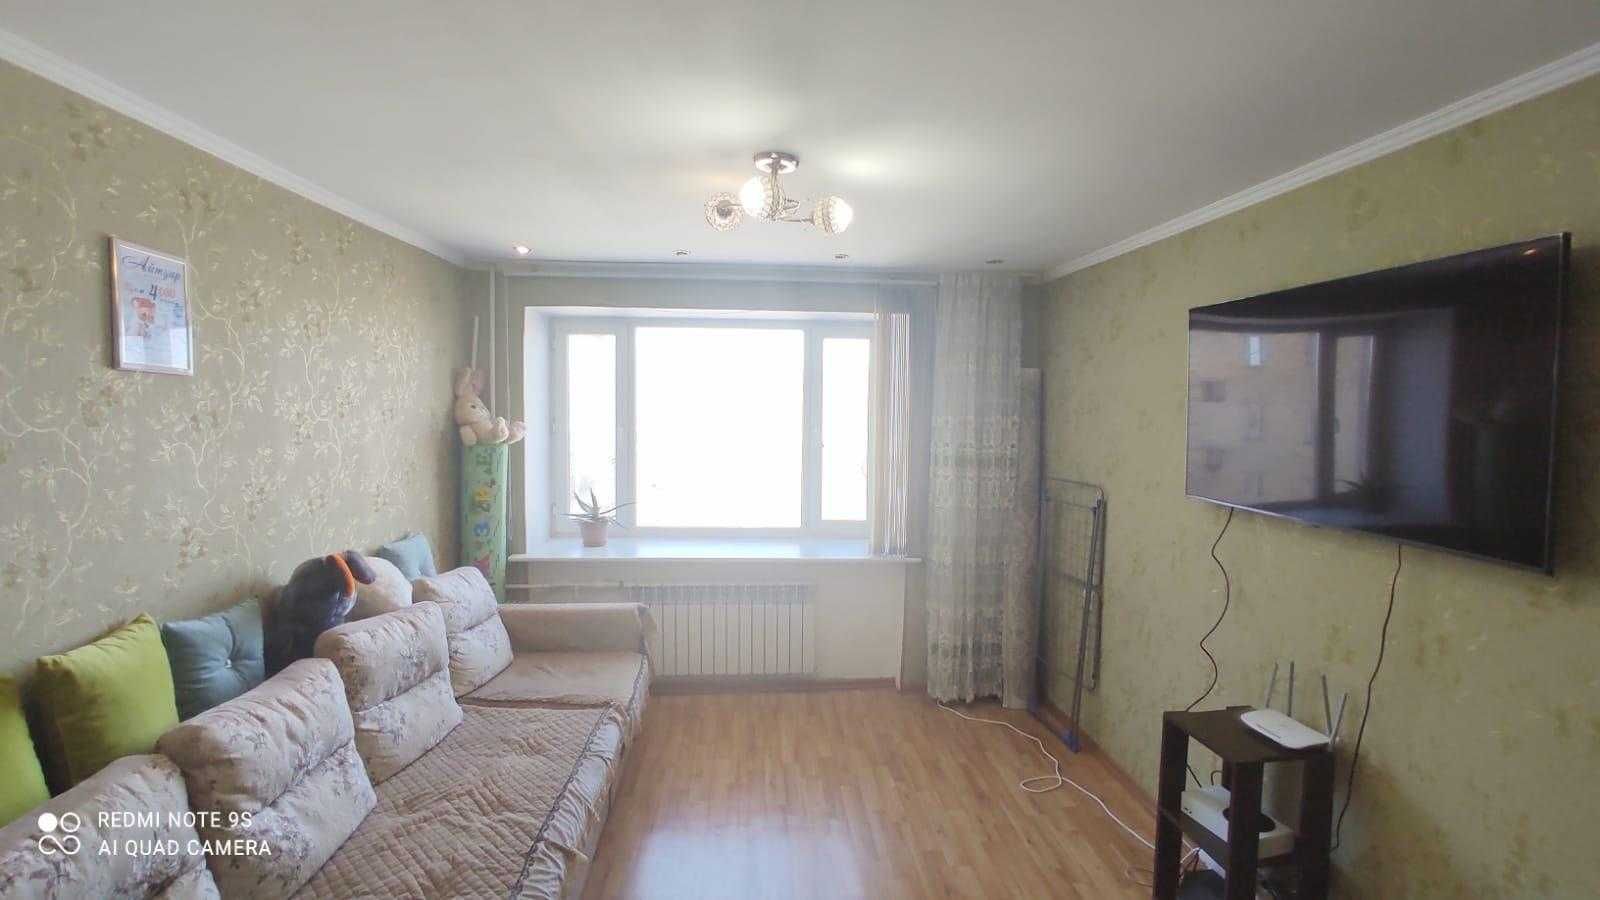 Продам 2-х комнатную квартиру в Сортировке